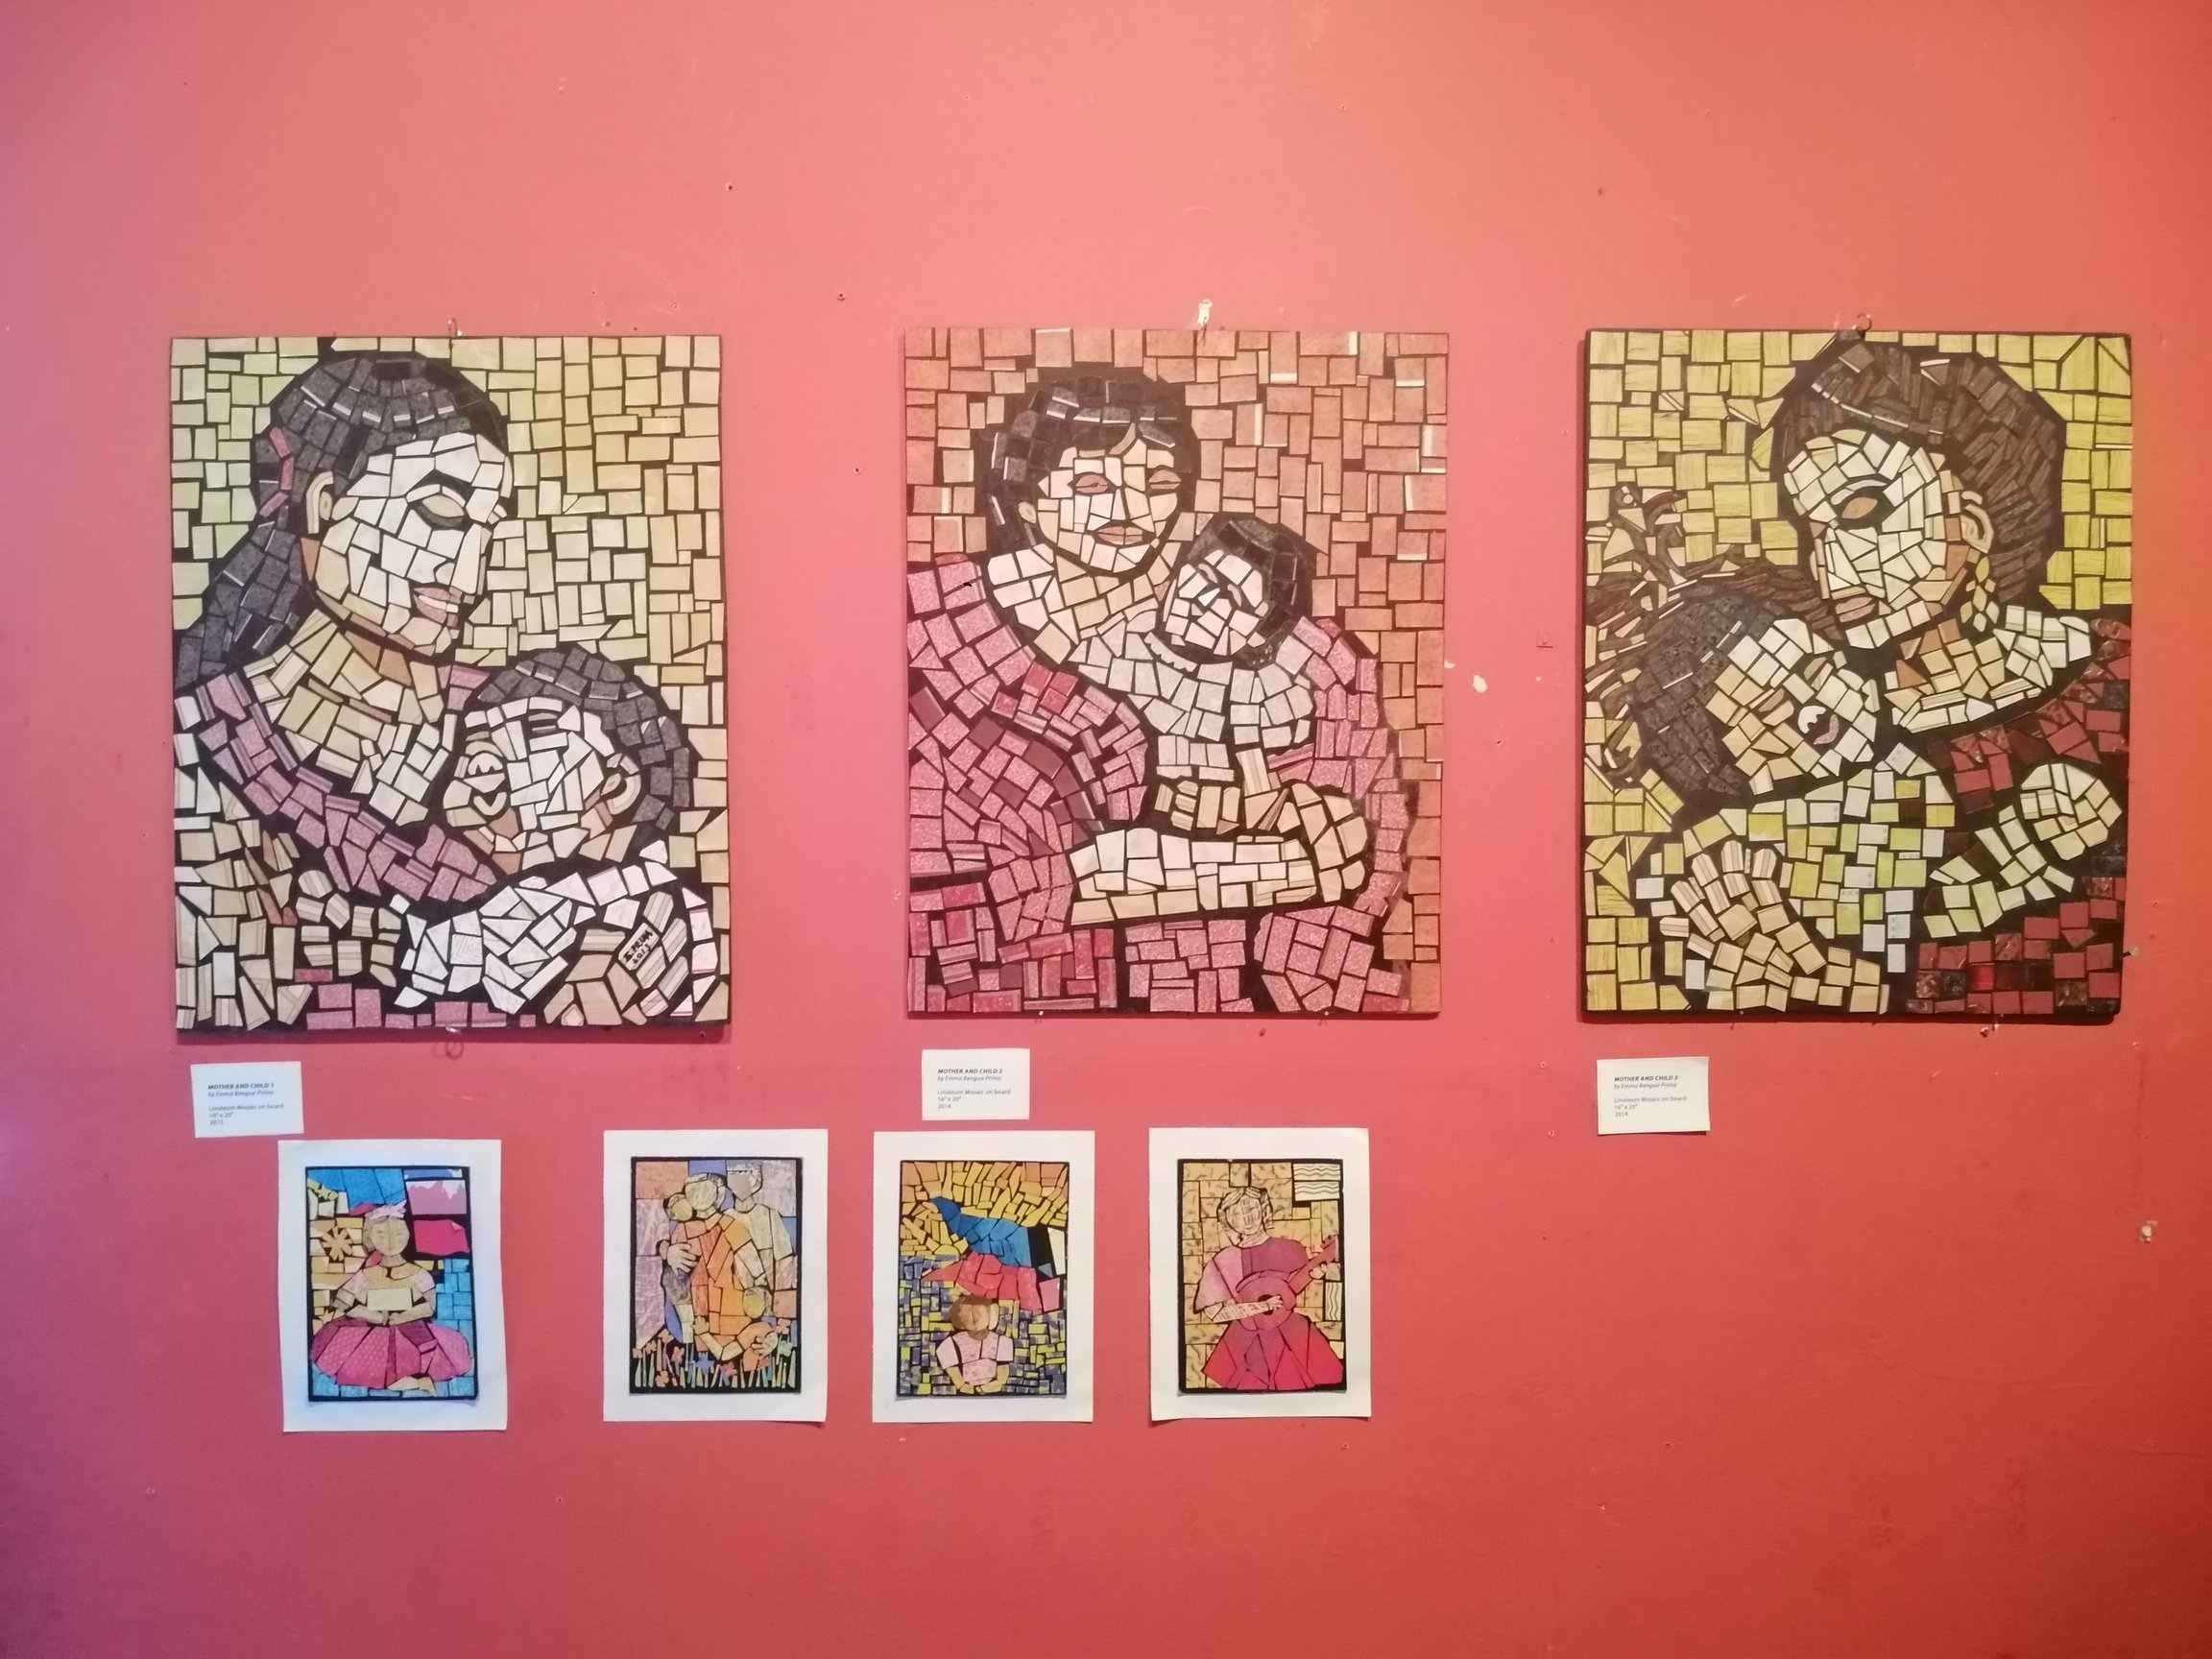 Mother-daughter tandem depicts ‘essence’ of women in art exhibit